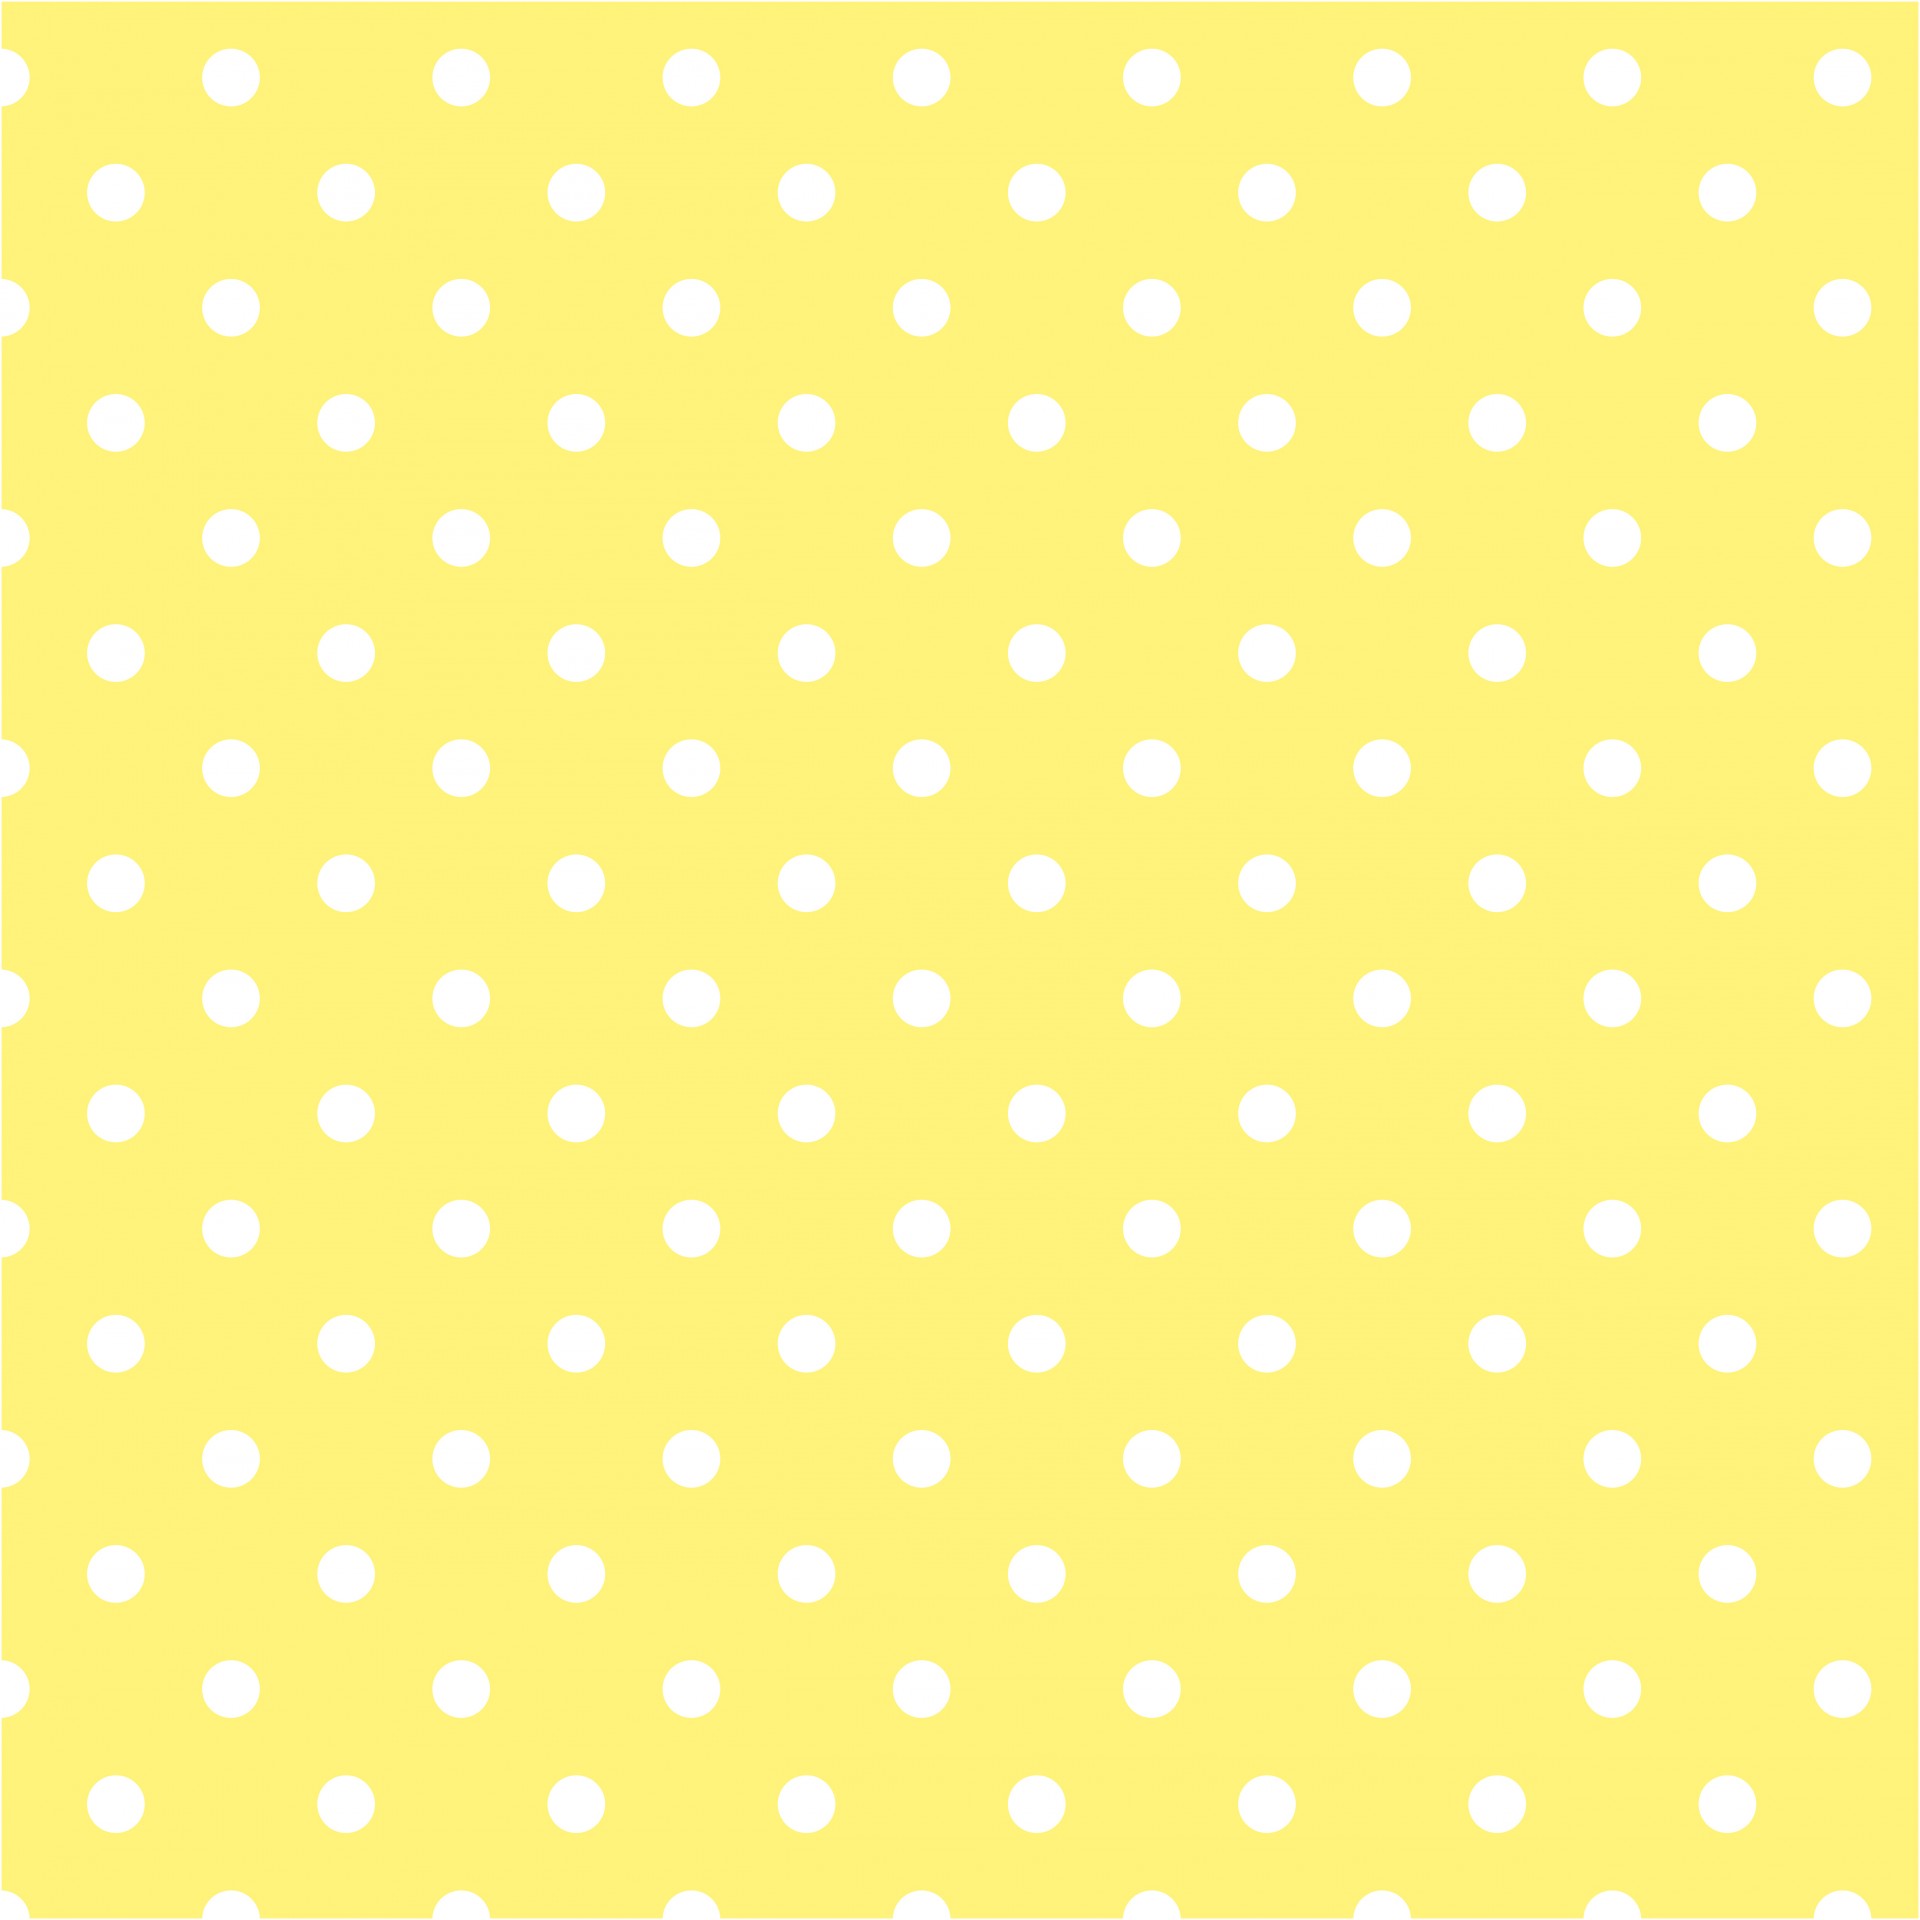 polka dots yellow white free photo